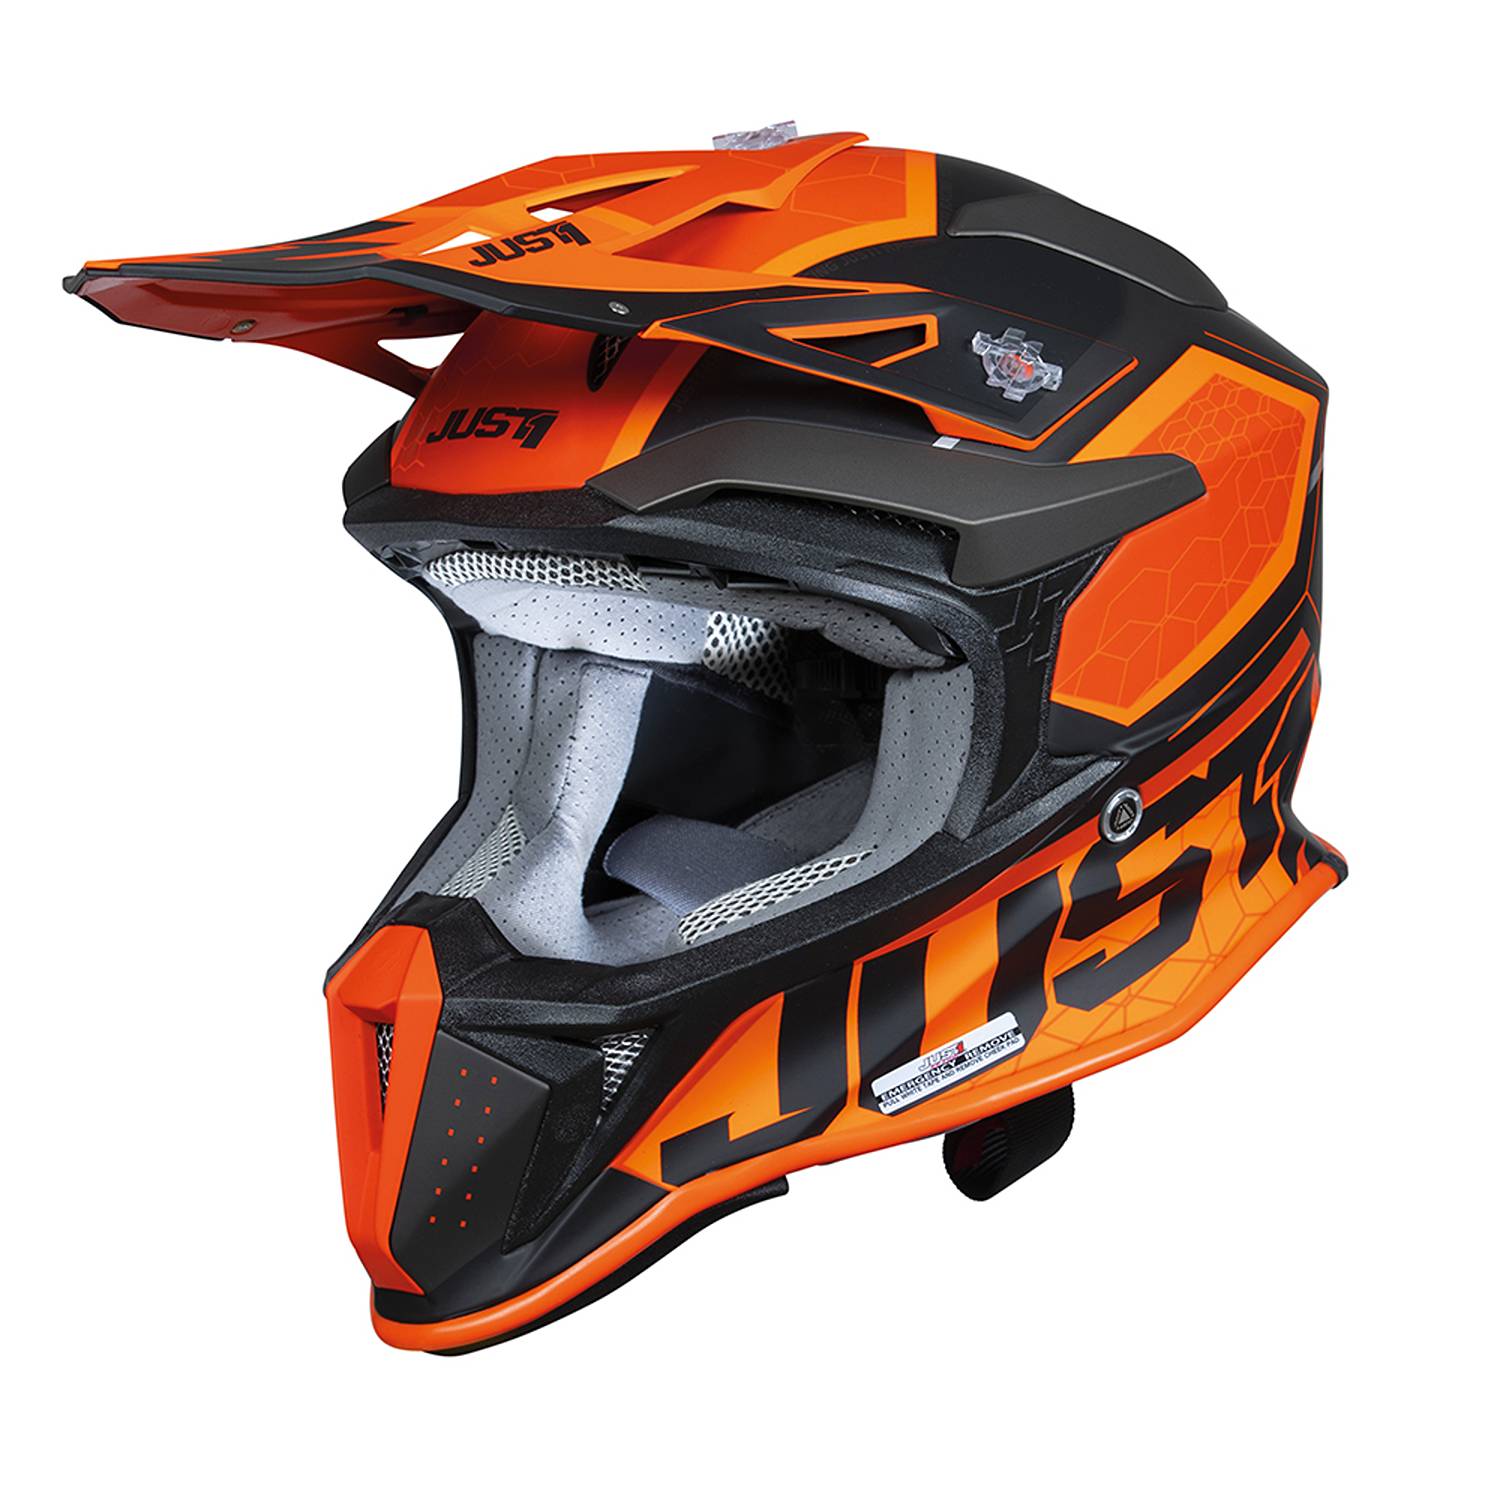 Image of Just1 J18-F Hexa Orange Black Matt Offroad Helmet Size M EN